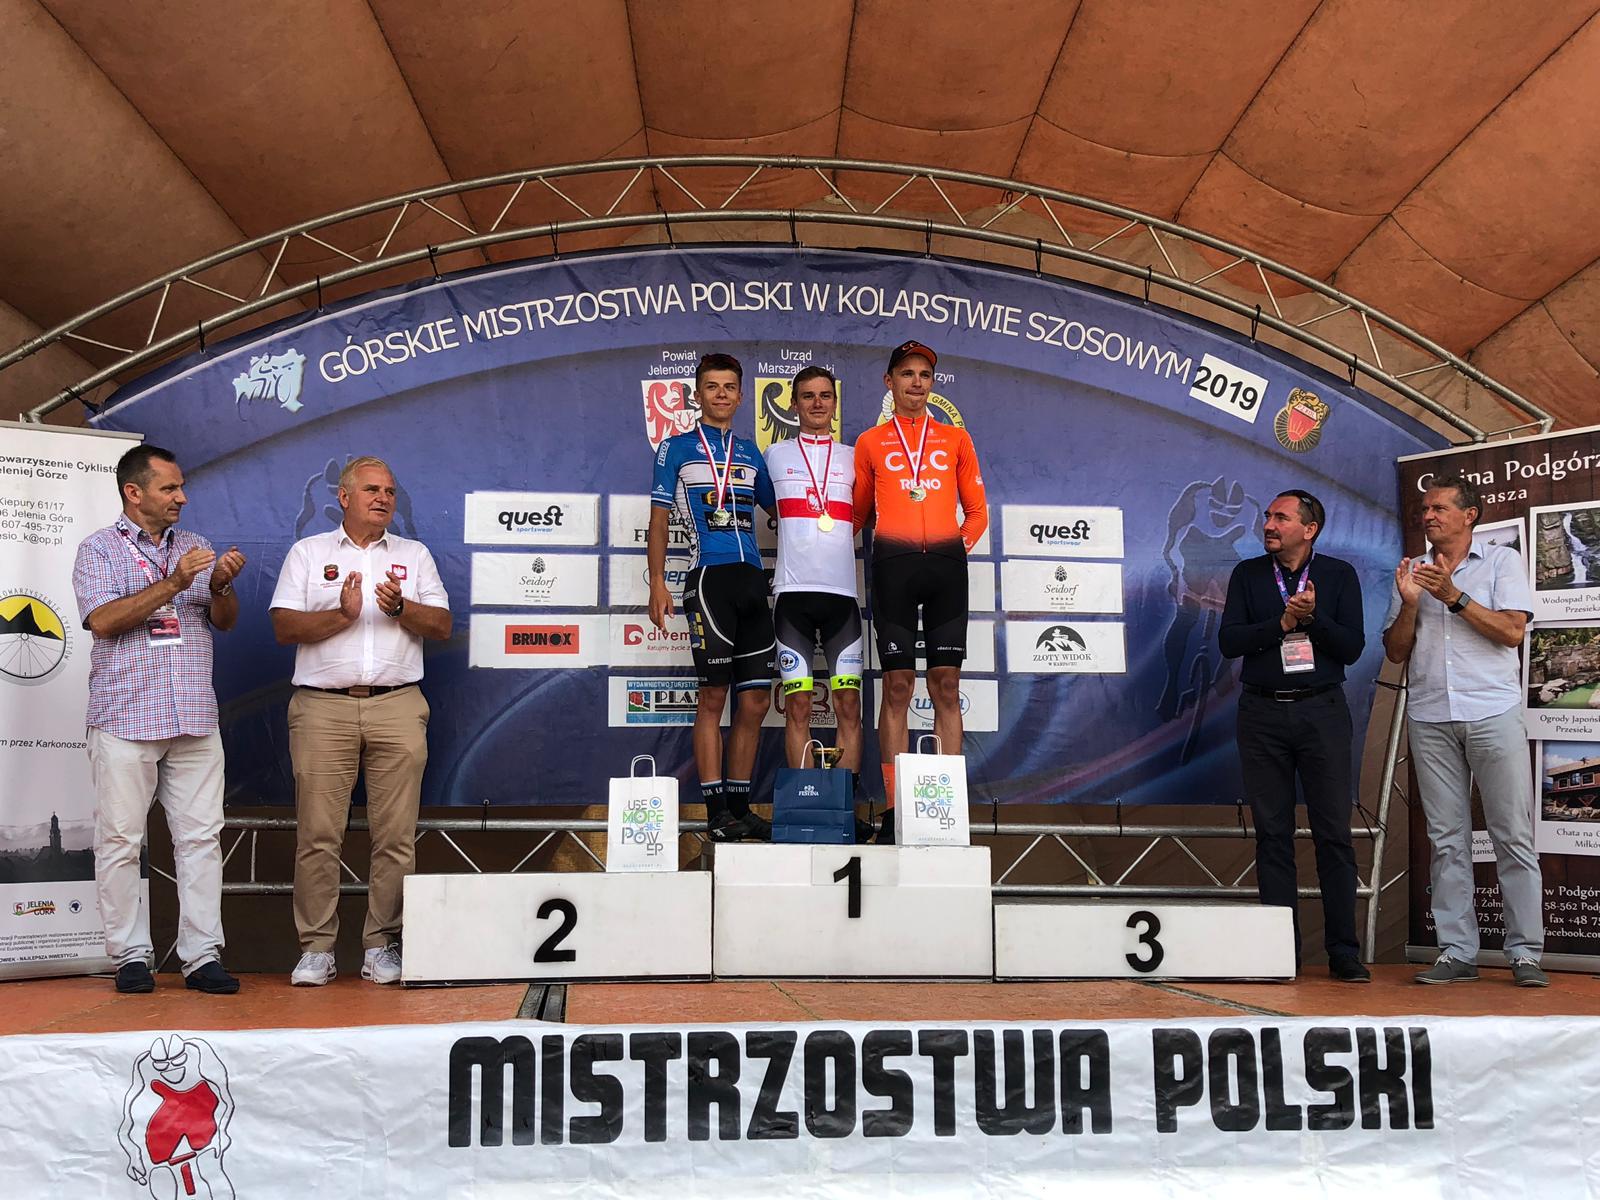 Górskie Szosowe Mistrzostwa Polski 2019. Podlaski ze złotem w elicie